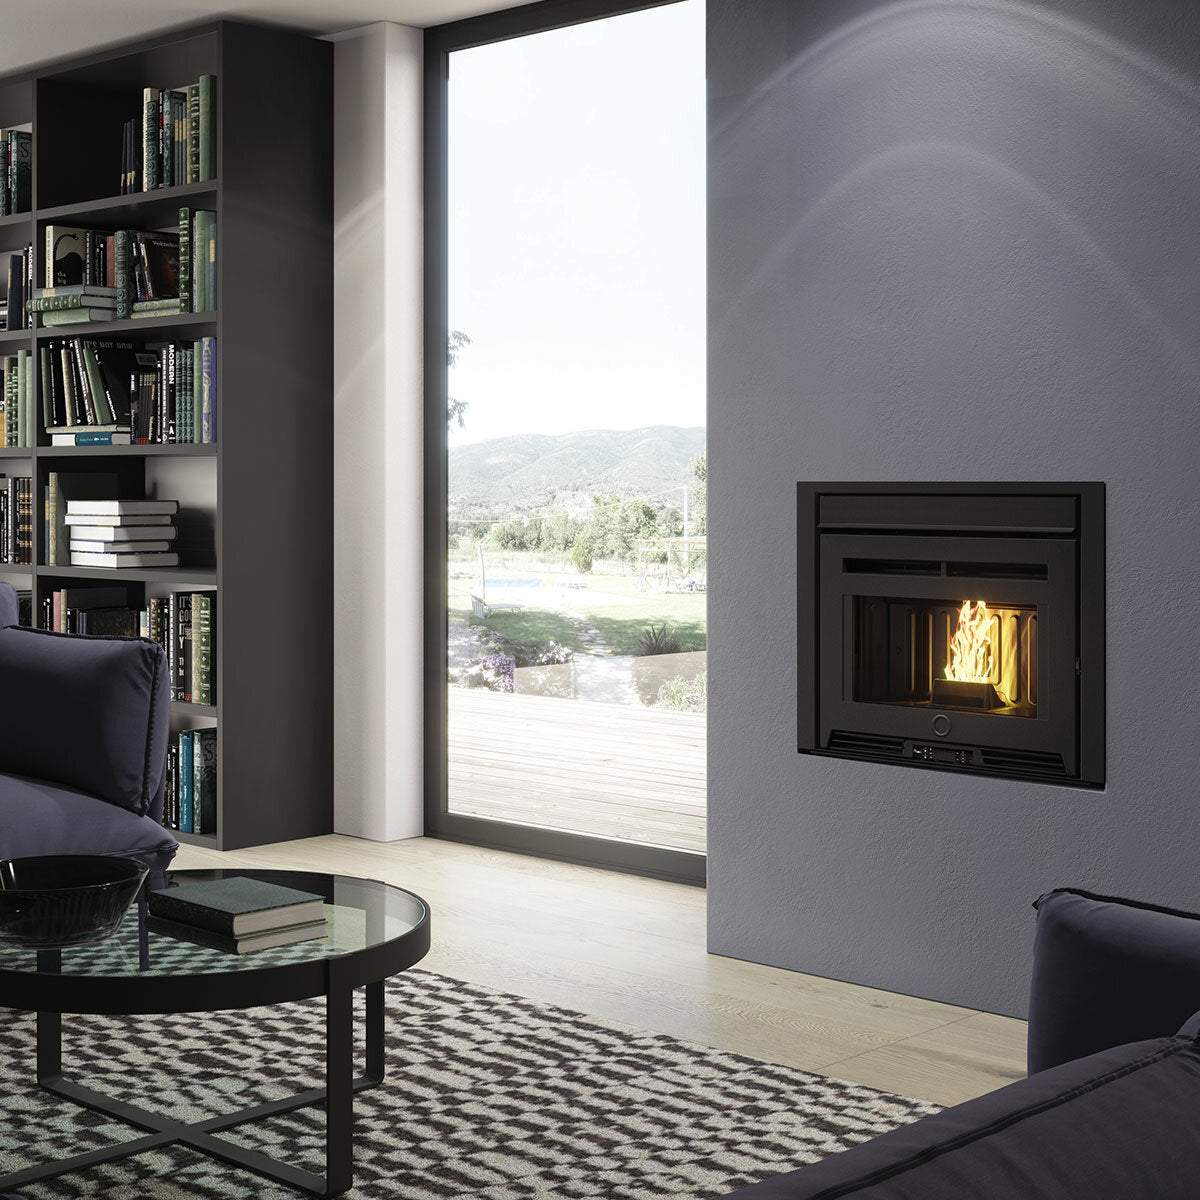 Pellet fireplace insert EK63 PELLEK110+ - Edilkamin group - 10.5 kW with ducted air WiFi